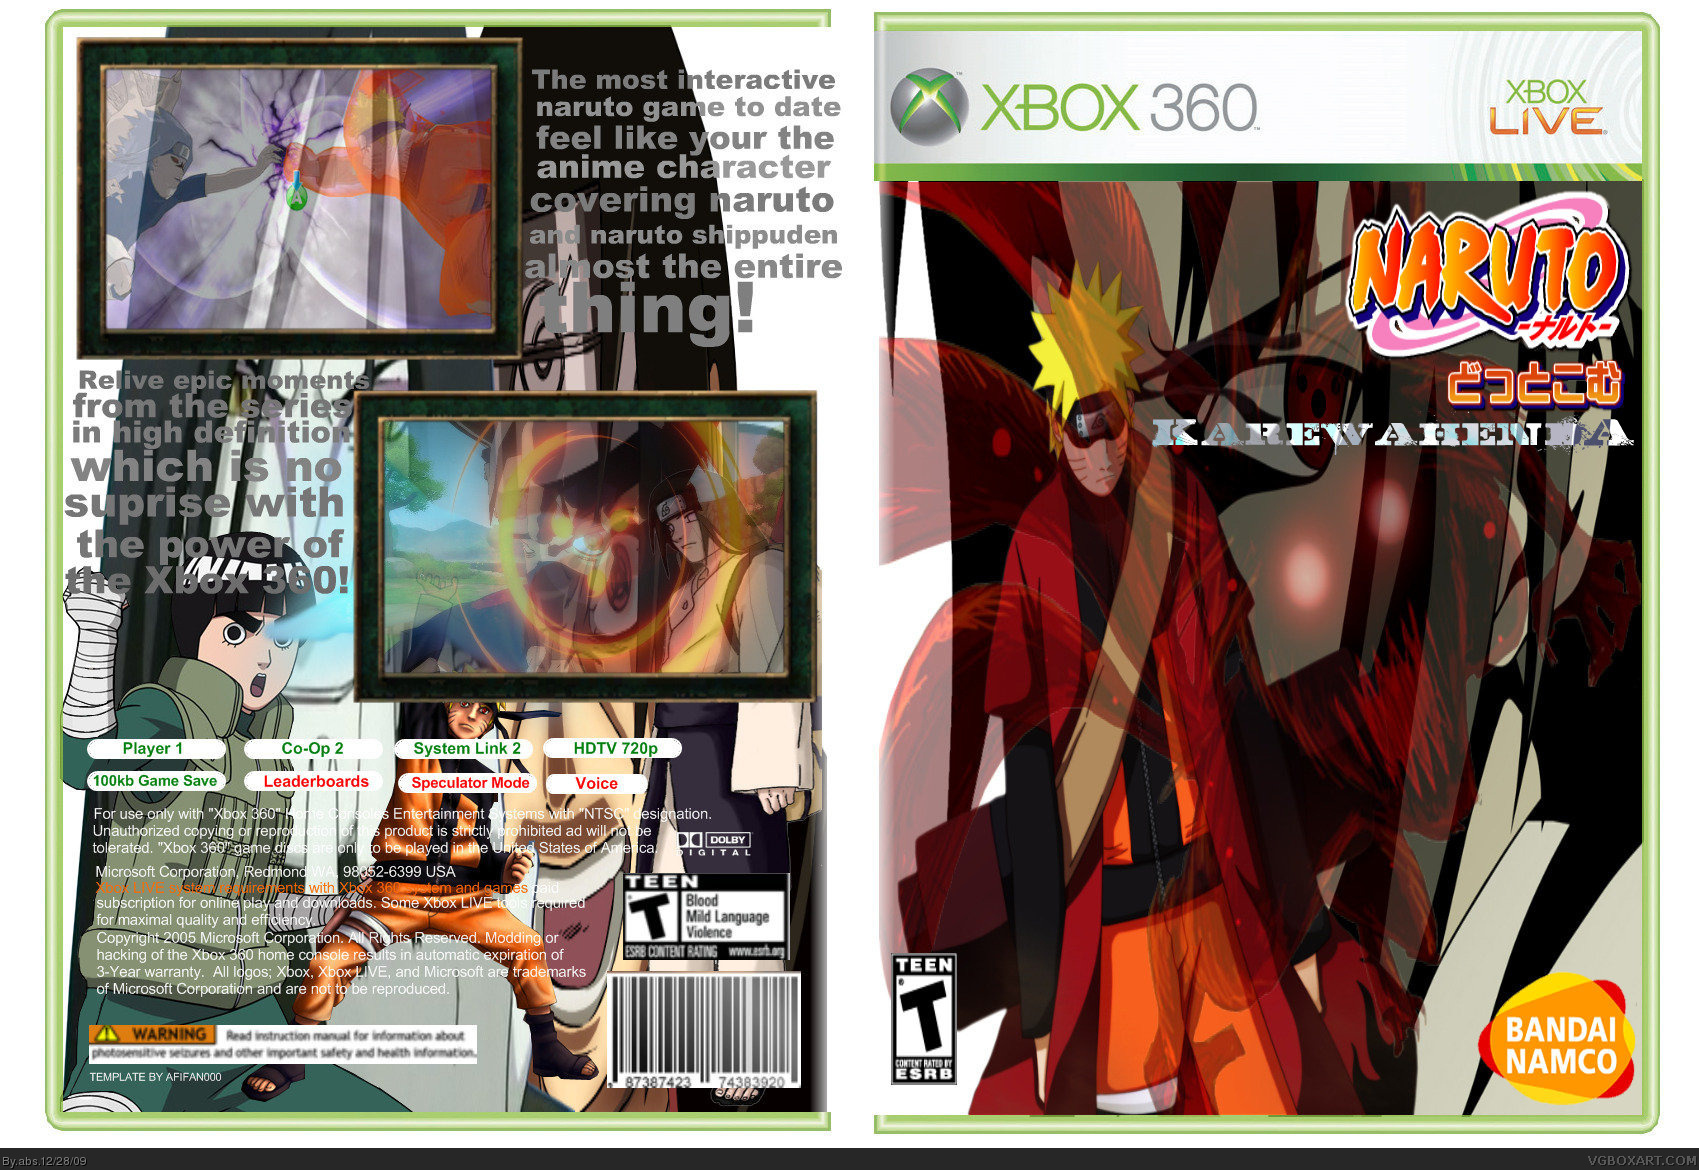 Naruto Ka-re-wa-hendA box cover